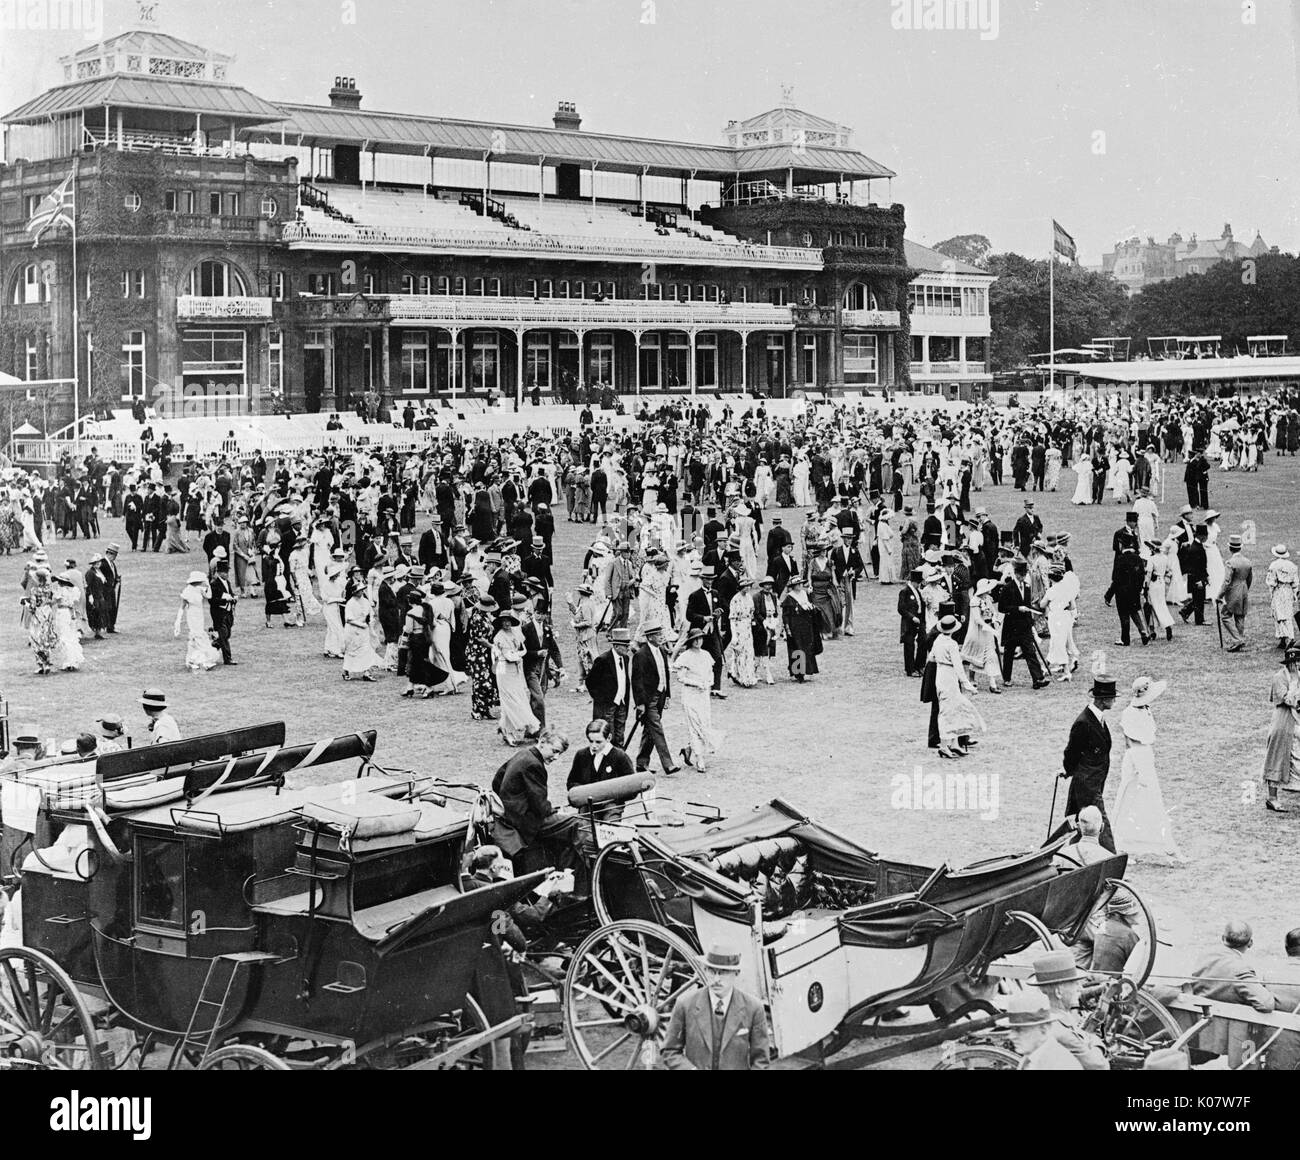 Escena durante la reunión anual de Eton escarificador en V partido de cricket Lords Cricket Ground en el noroeste de Londres, el 13 de julio de 1934. Mostrando la gente pasea durante el intervalo del almuerzo, con carruajes típicos en primer plano. El partido en sí fue un empate. Fecha: 1934 Foto de stock